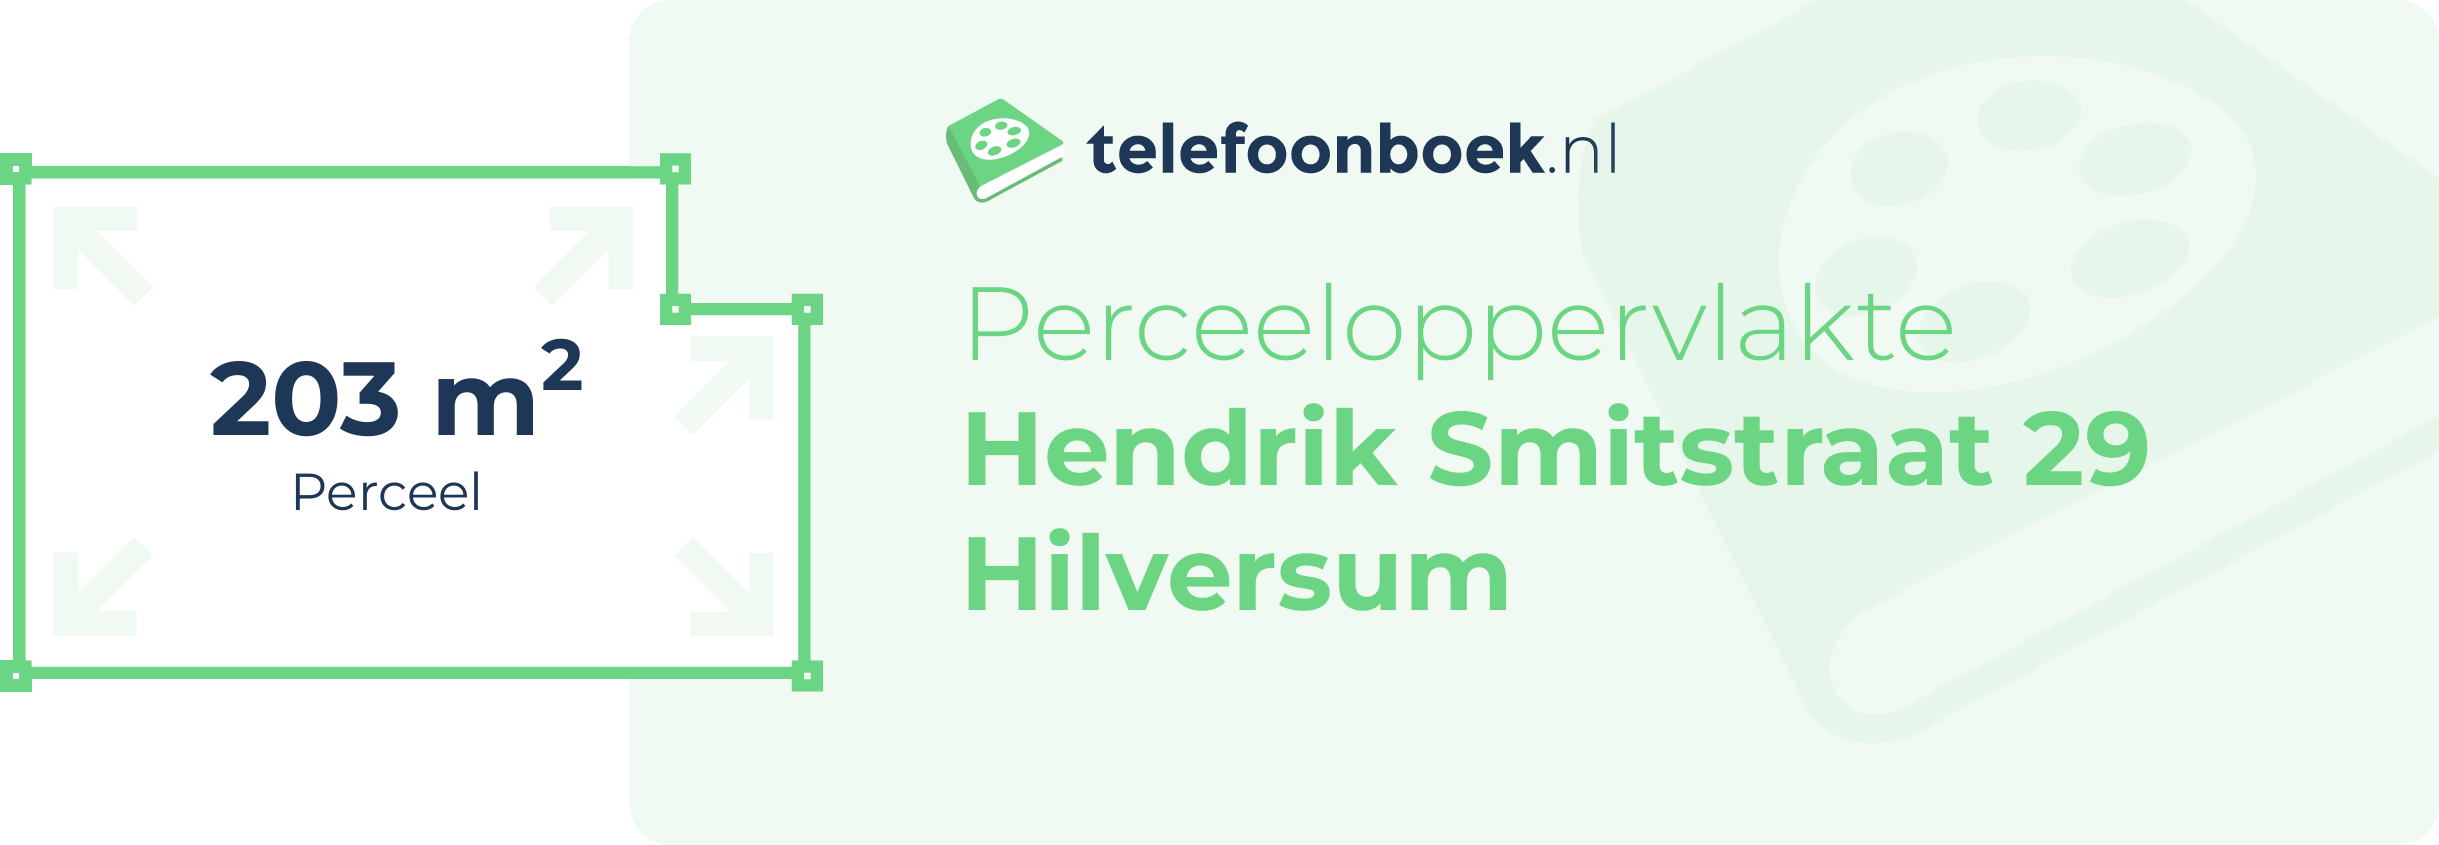 Perceeloppervlakte Hendrik Smitstraat 29 Hilversum